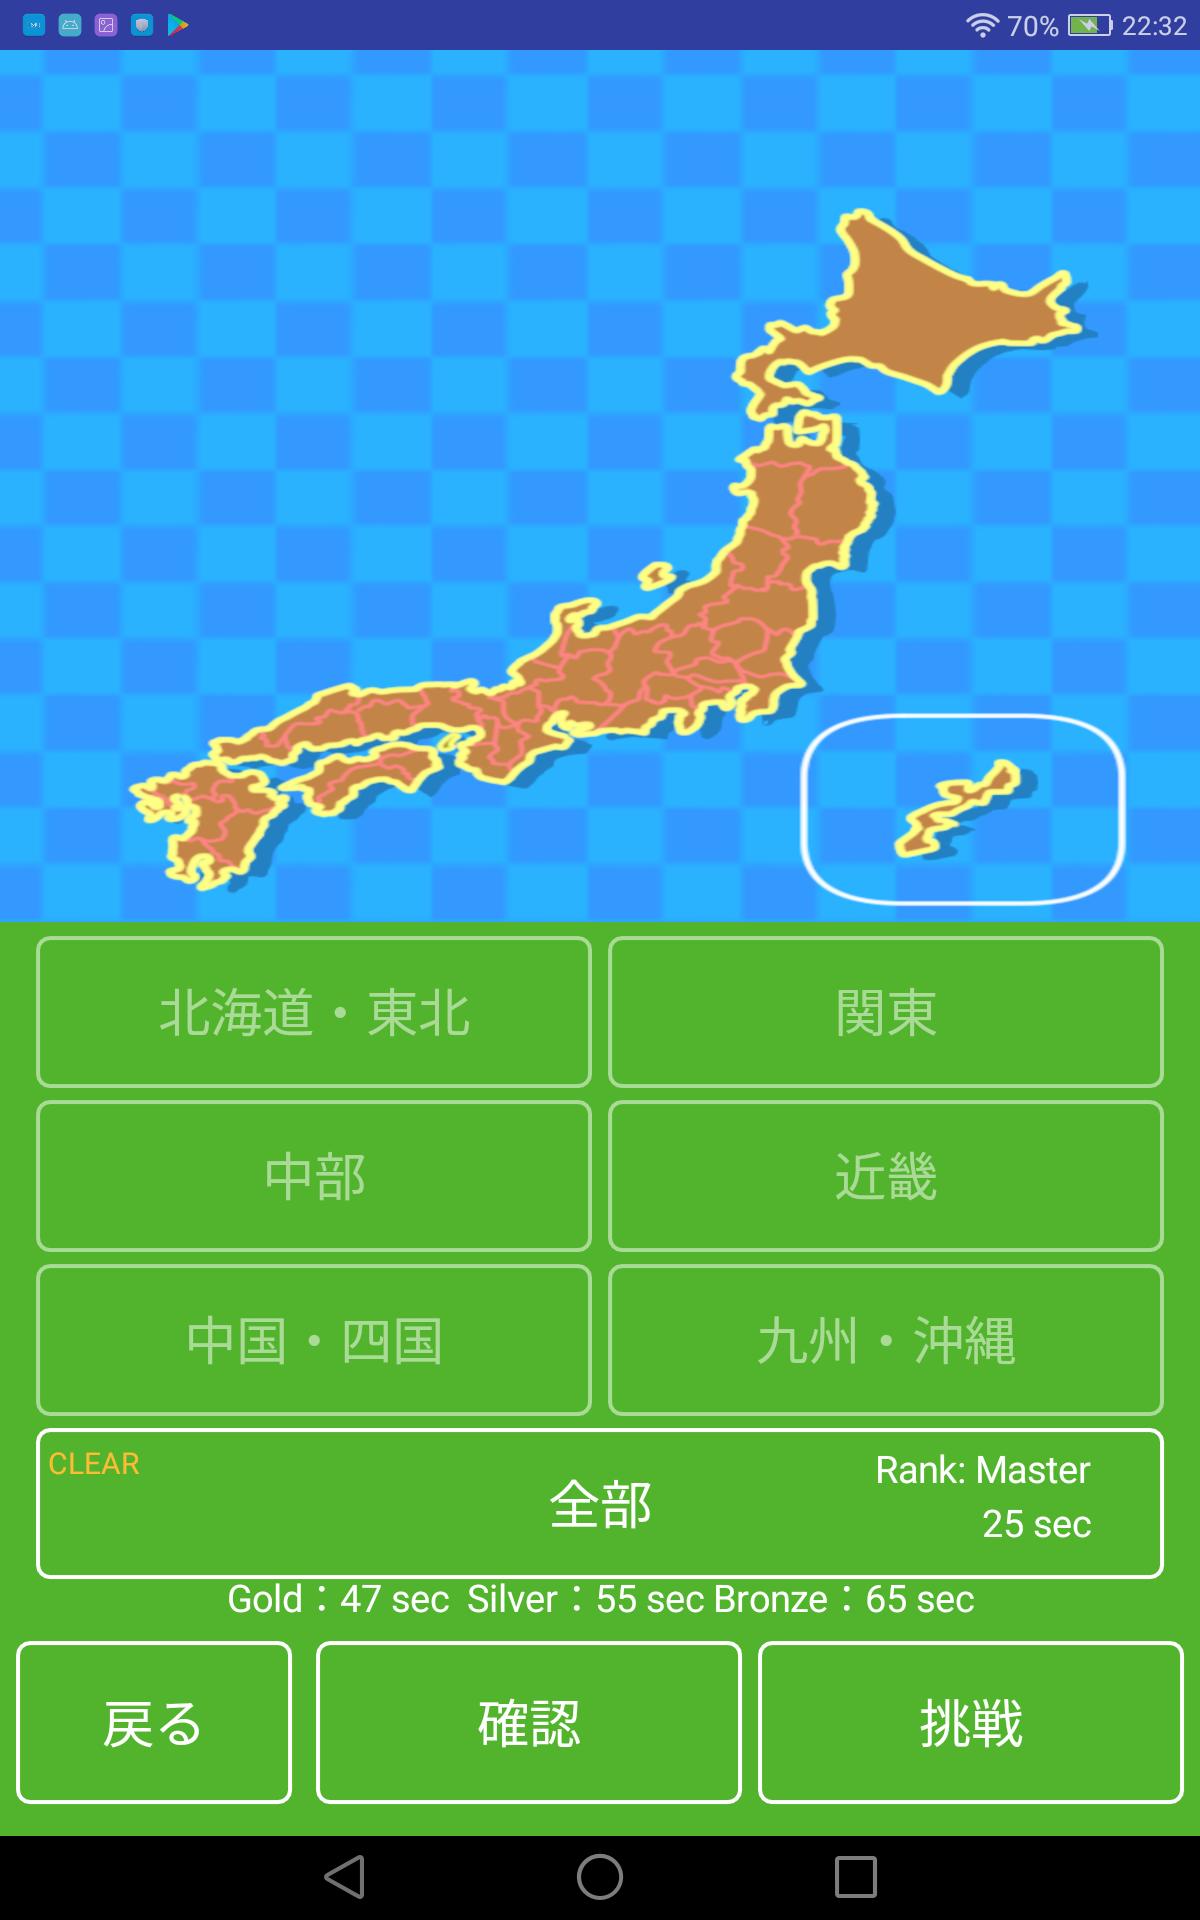 都道府県の位置と形を覚えるアプリ 日本地図の県名クイズで地理を暗記